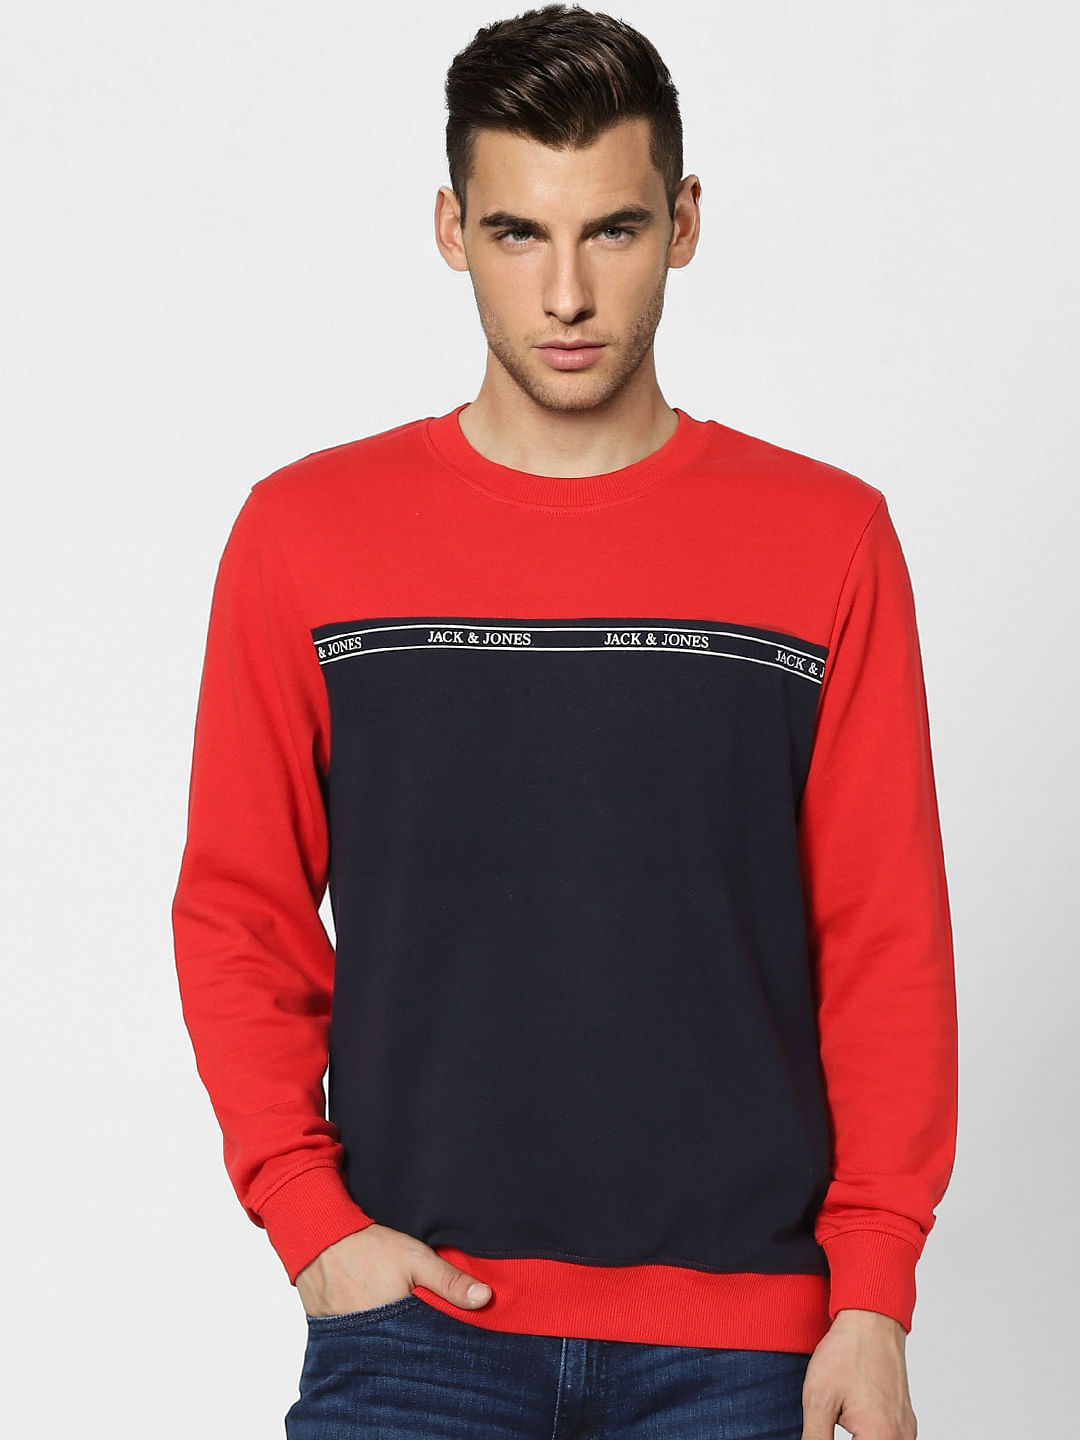 INT L Herren Bekleidung Pullover & Strickjacken Sweatshirts JACK & JONES Herren Sweatshirt Gr 